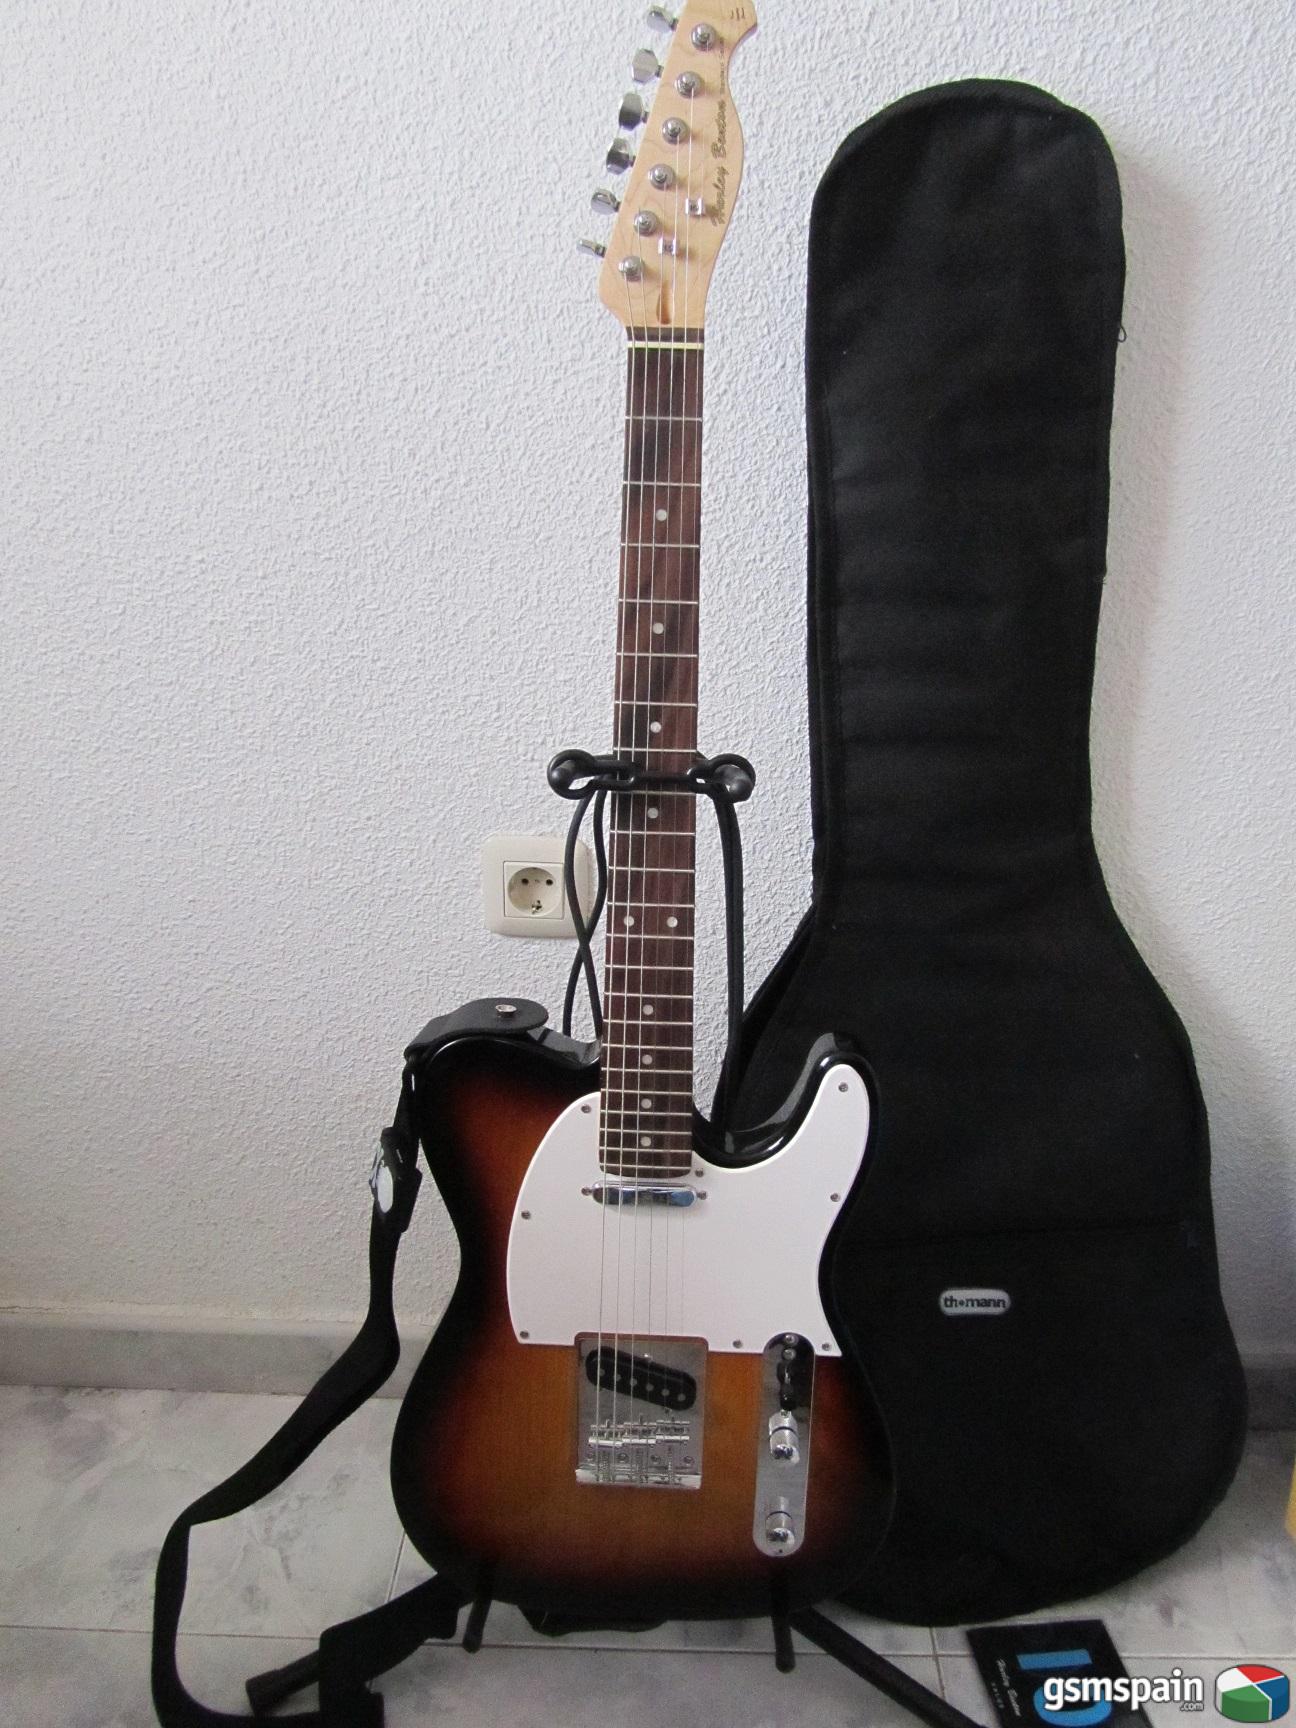 [VENDO] Guitarra electrica + cable juego Rocksmith + accesorios 85 euros